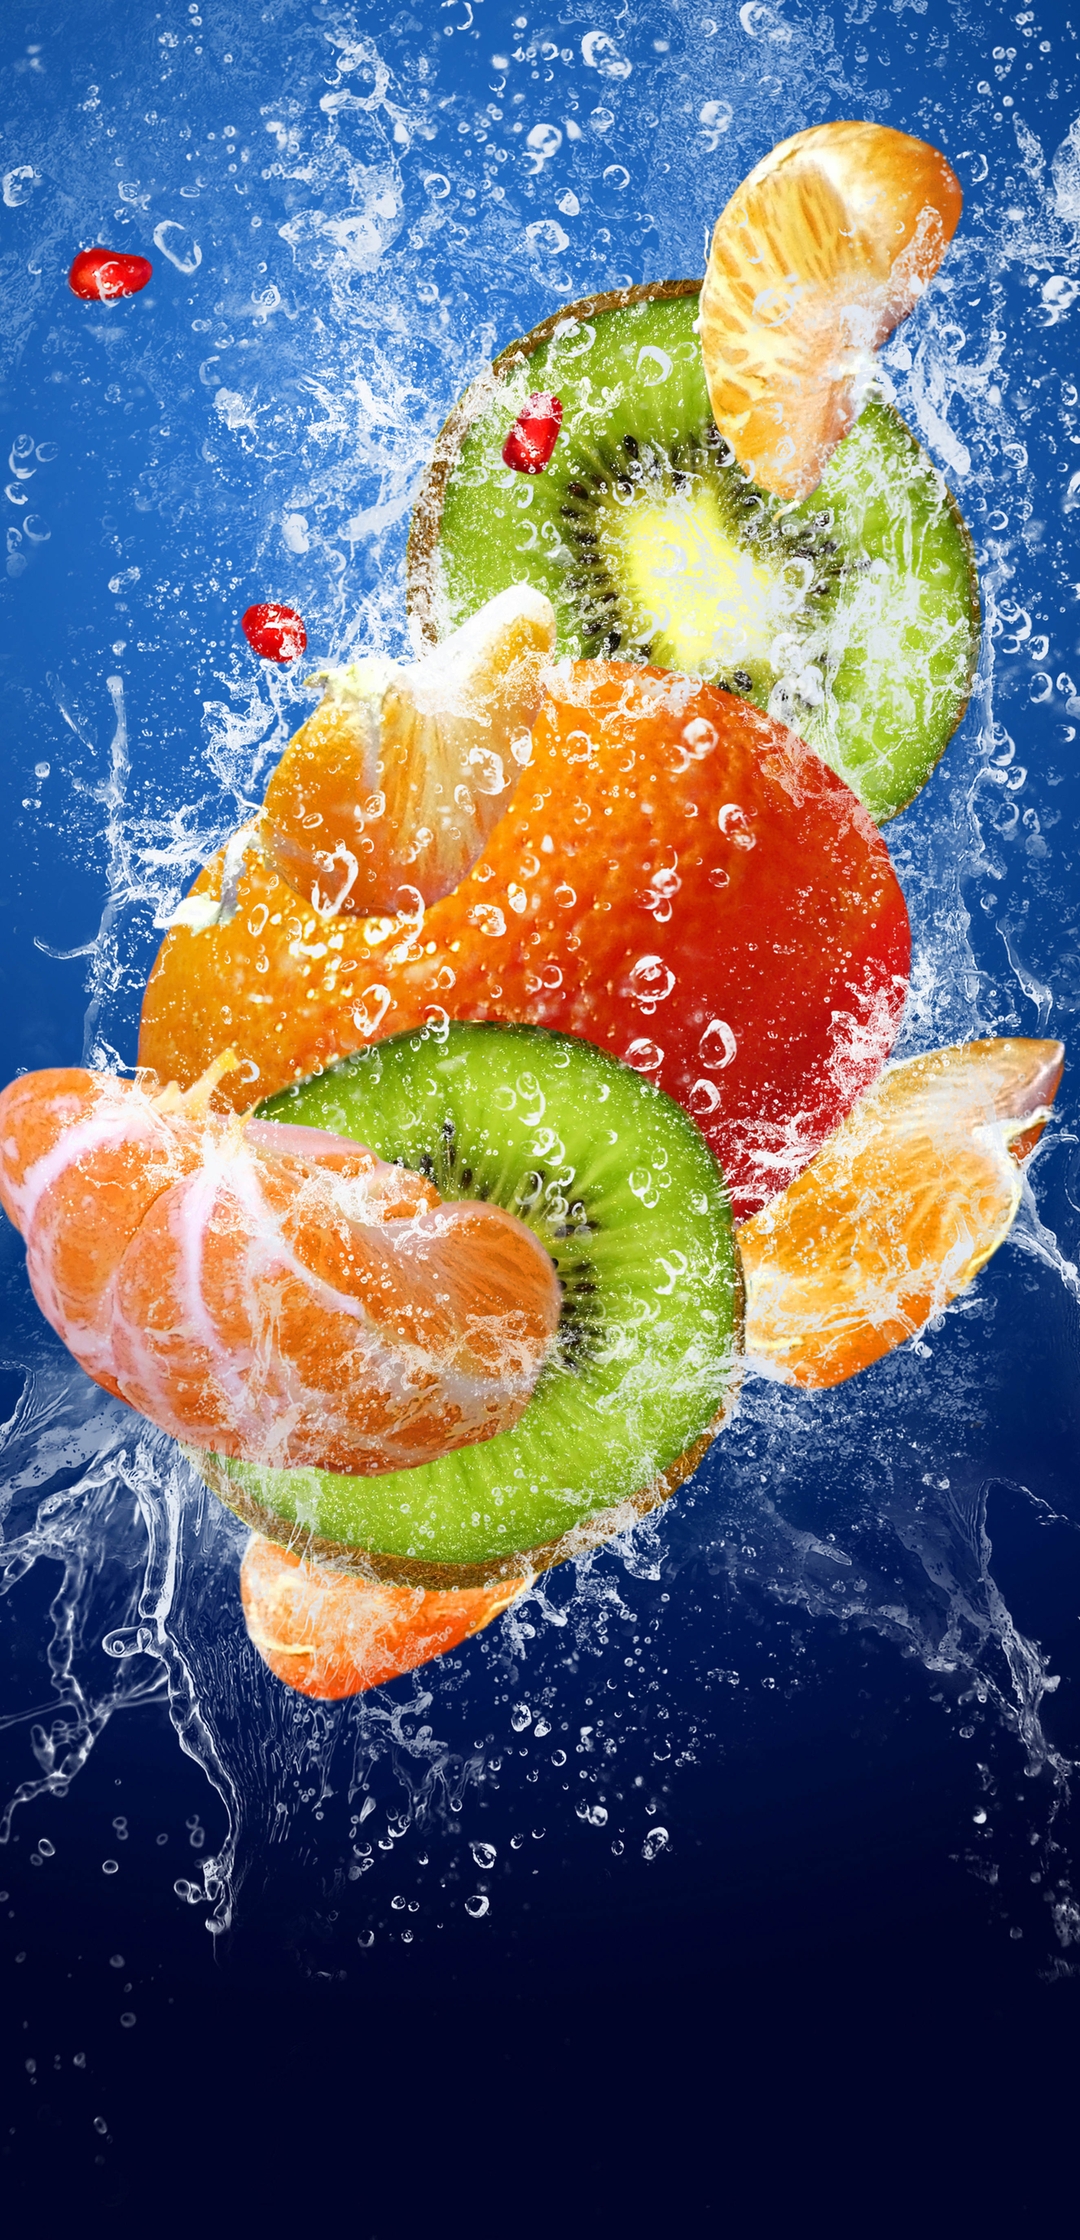 Картинка: Фрукты, дольки, киви, мандарин, апельсин, вода, брызги, погружение, синий фон